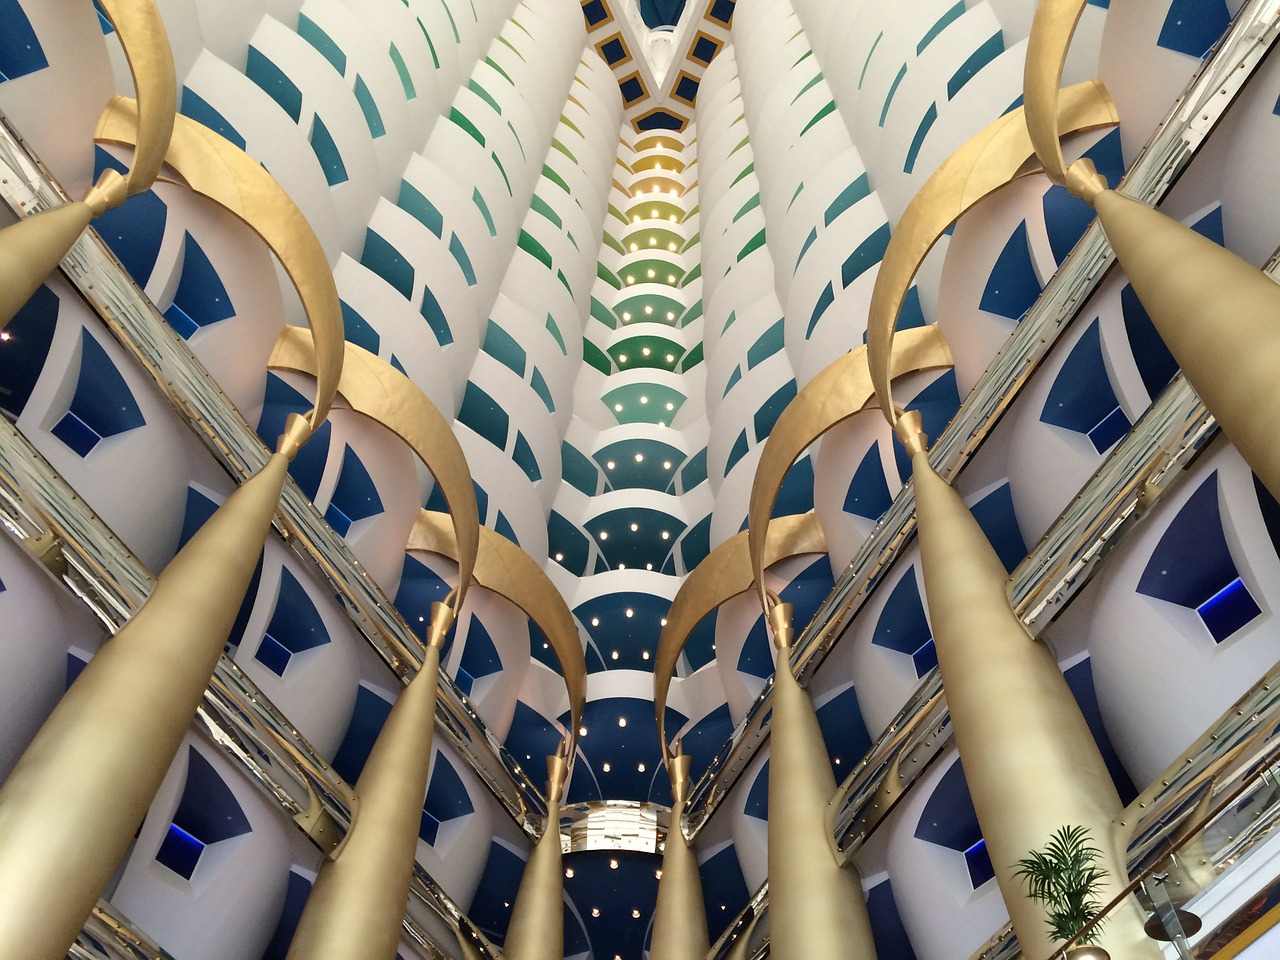 Burj al Arab, Dubai hotel